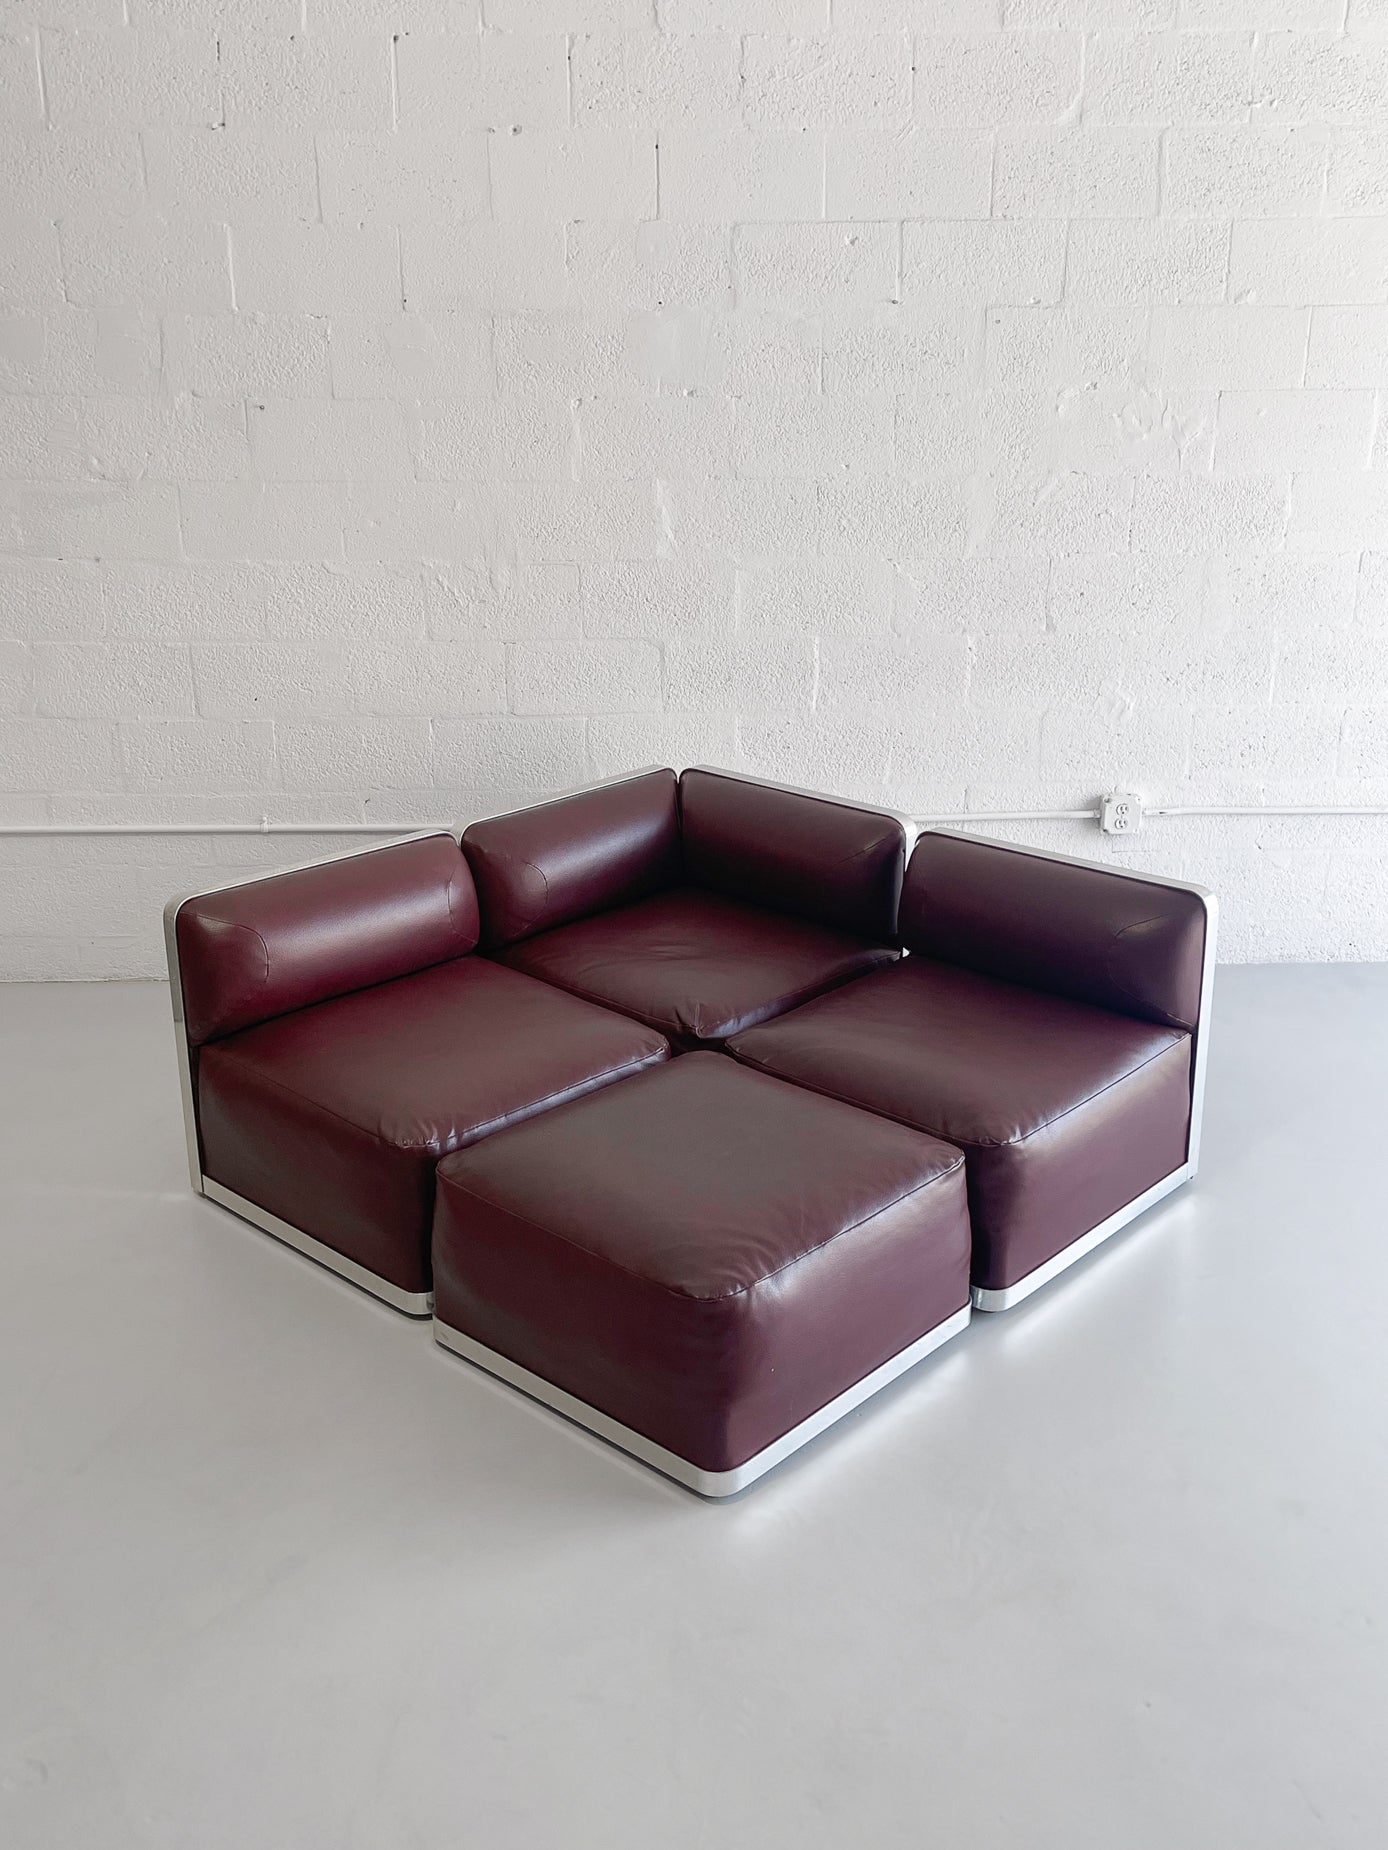 4-Piece Modular Sectional Sofa, 1980s